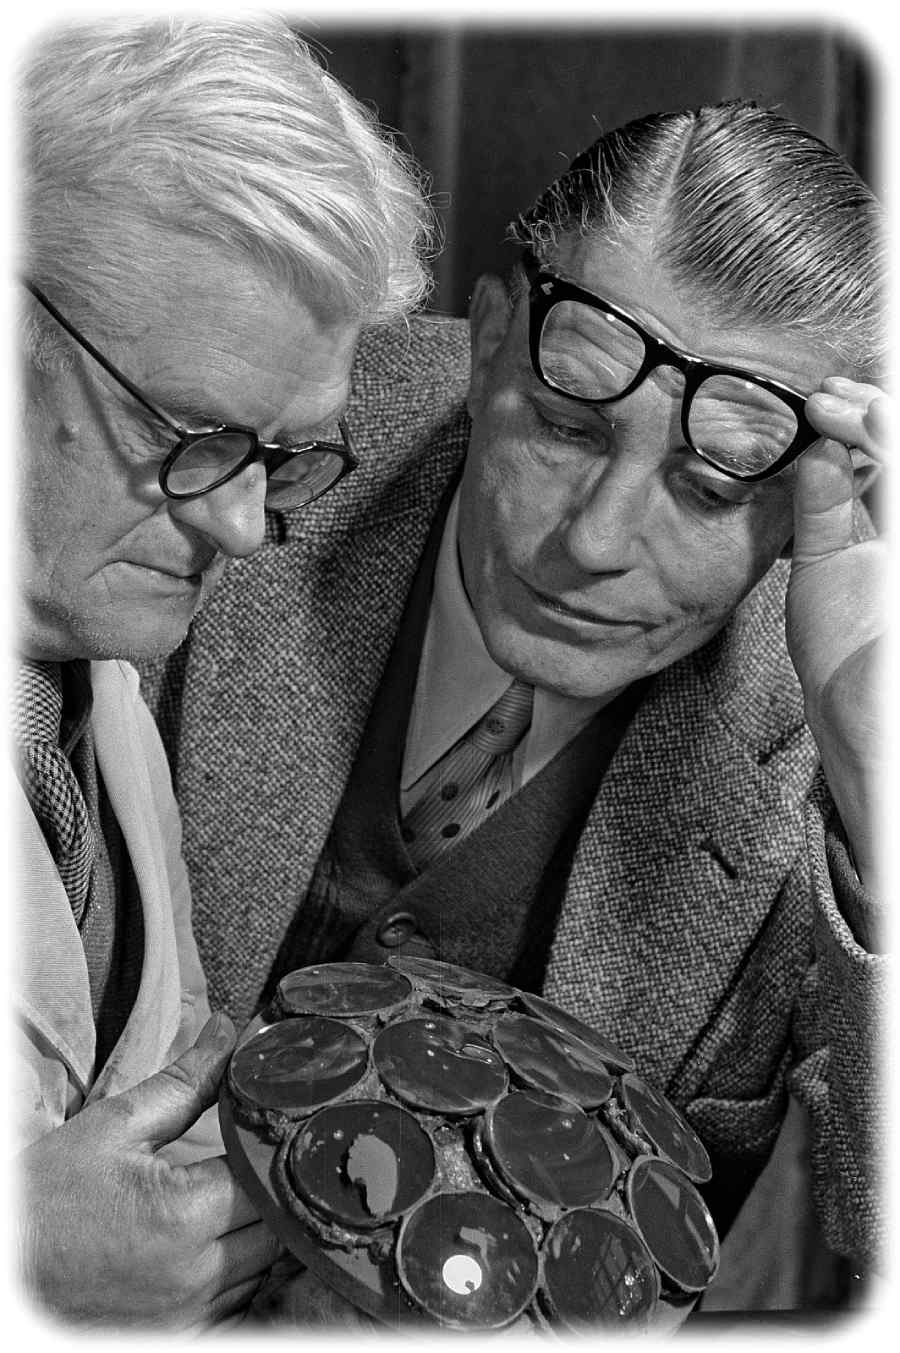 Karl Pouva (rechts) begutachtet 1951 mit einem Mitarbeiter auf einen Tragkörper gekittete Linsen für den Bildwerfer "Pouva Magica". Foto: Richard Peter jun., Deutsche Fotothek, Wikipedia, CC4-Lizenz, https://creativecommons.org/licenses/by-sa/4.0/